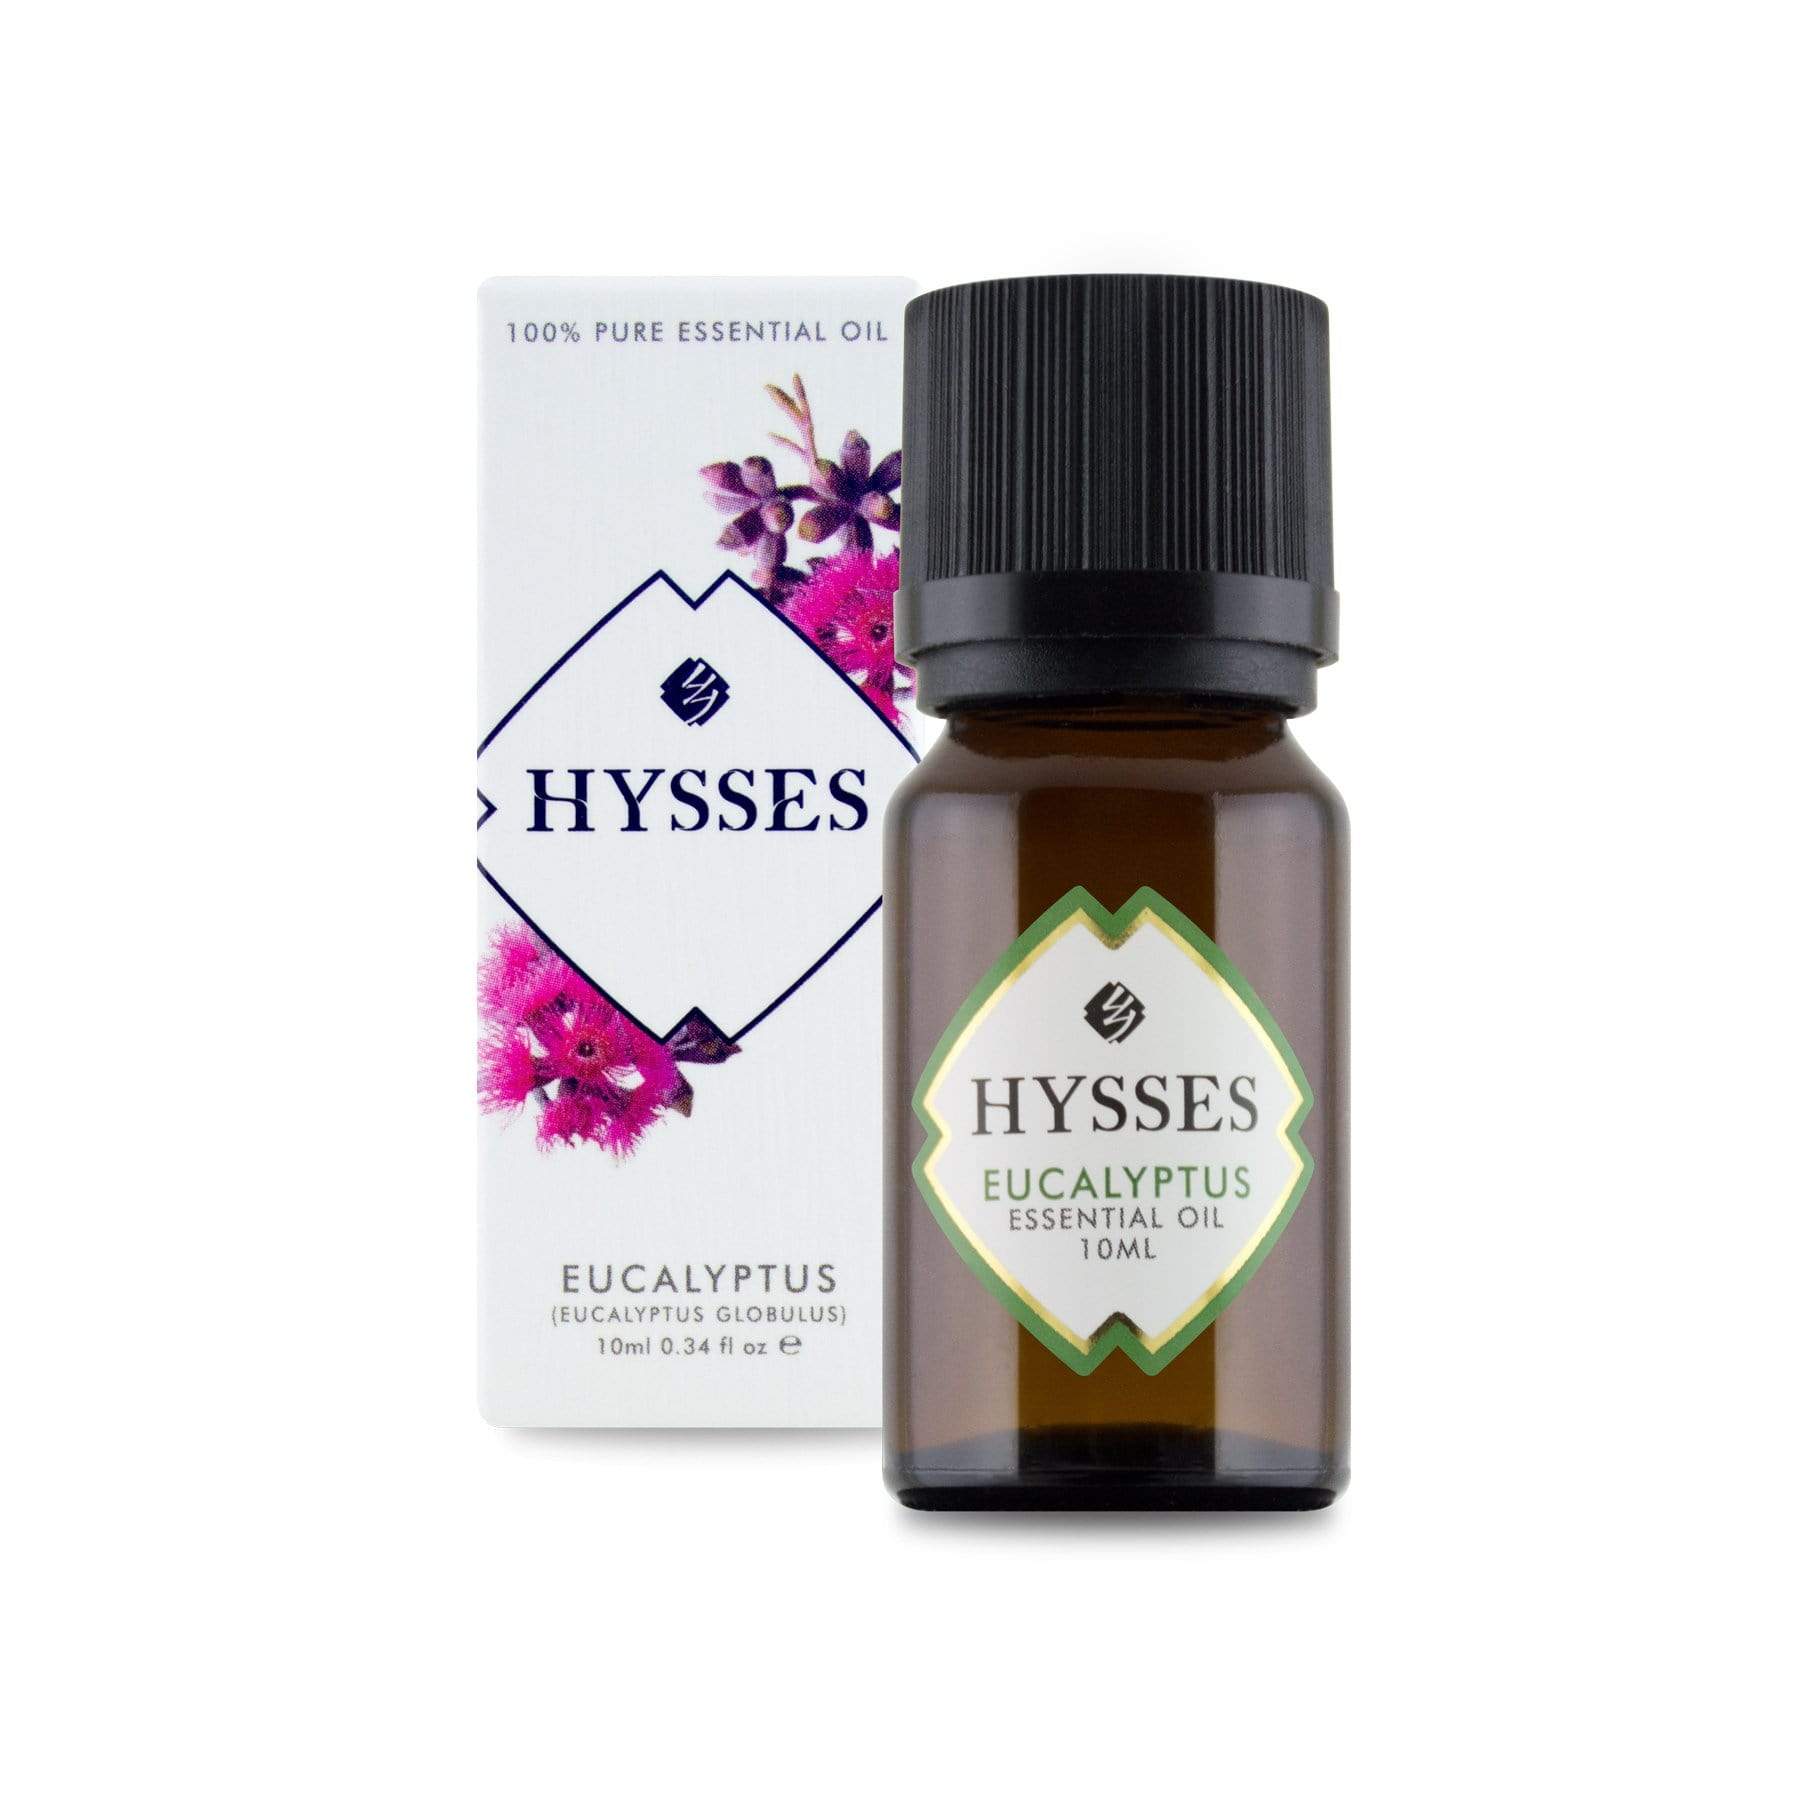 Hysses Essential Oil Essential Oil Eucalyptus, 10ml